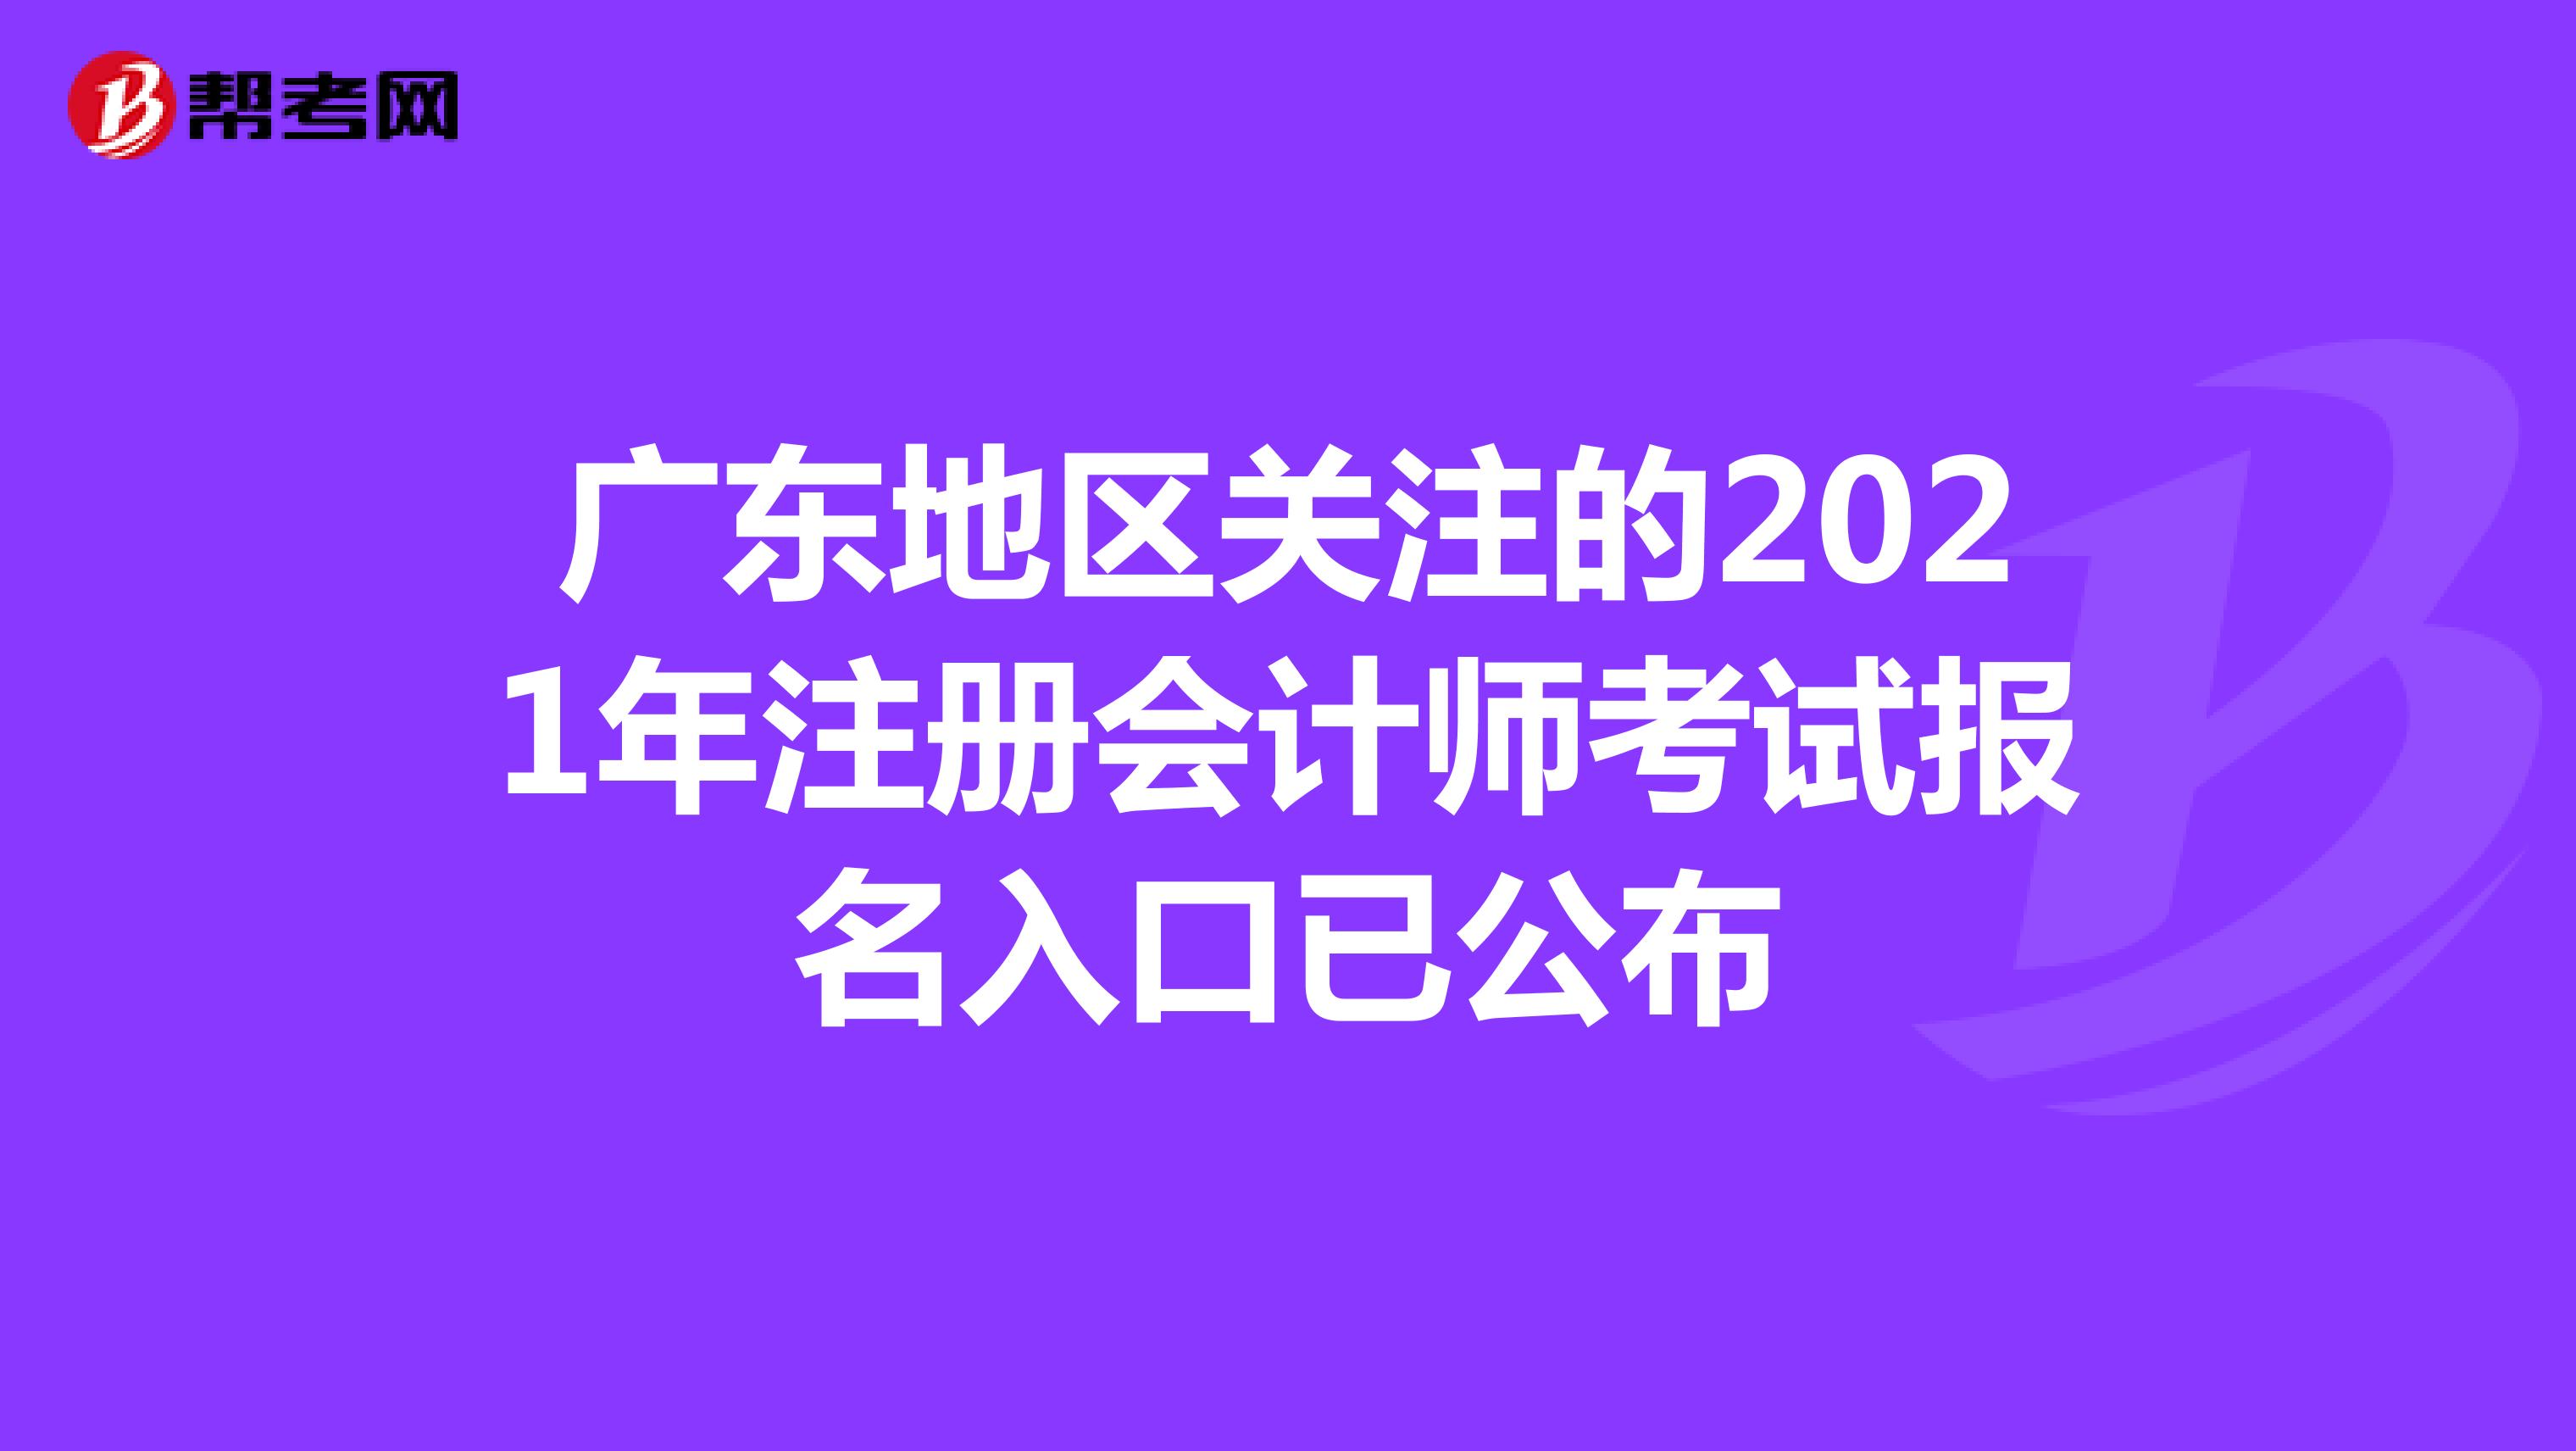 广东地区关注的2021年注册会计师考试报名入口已公布